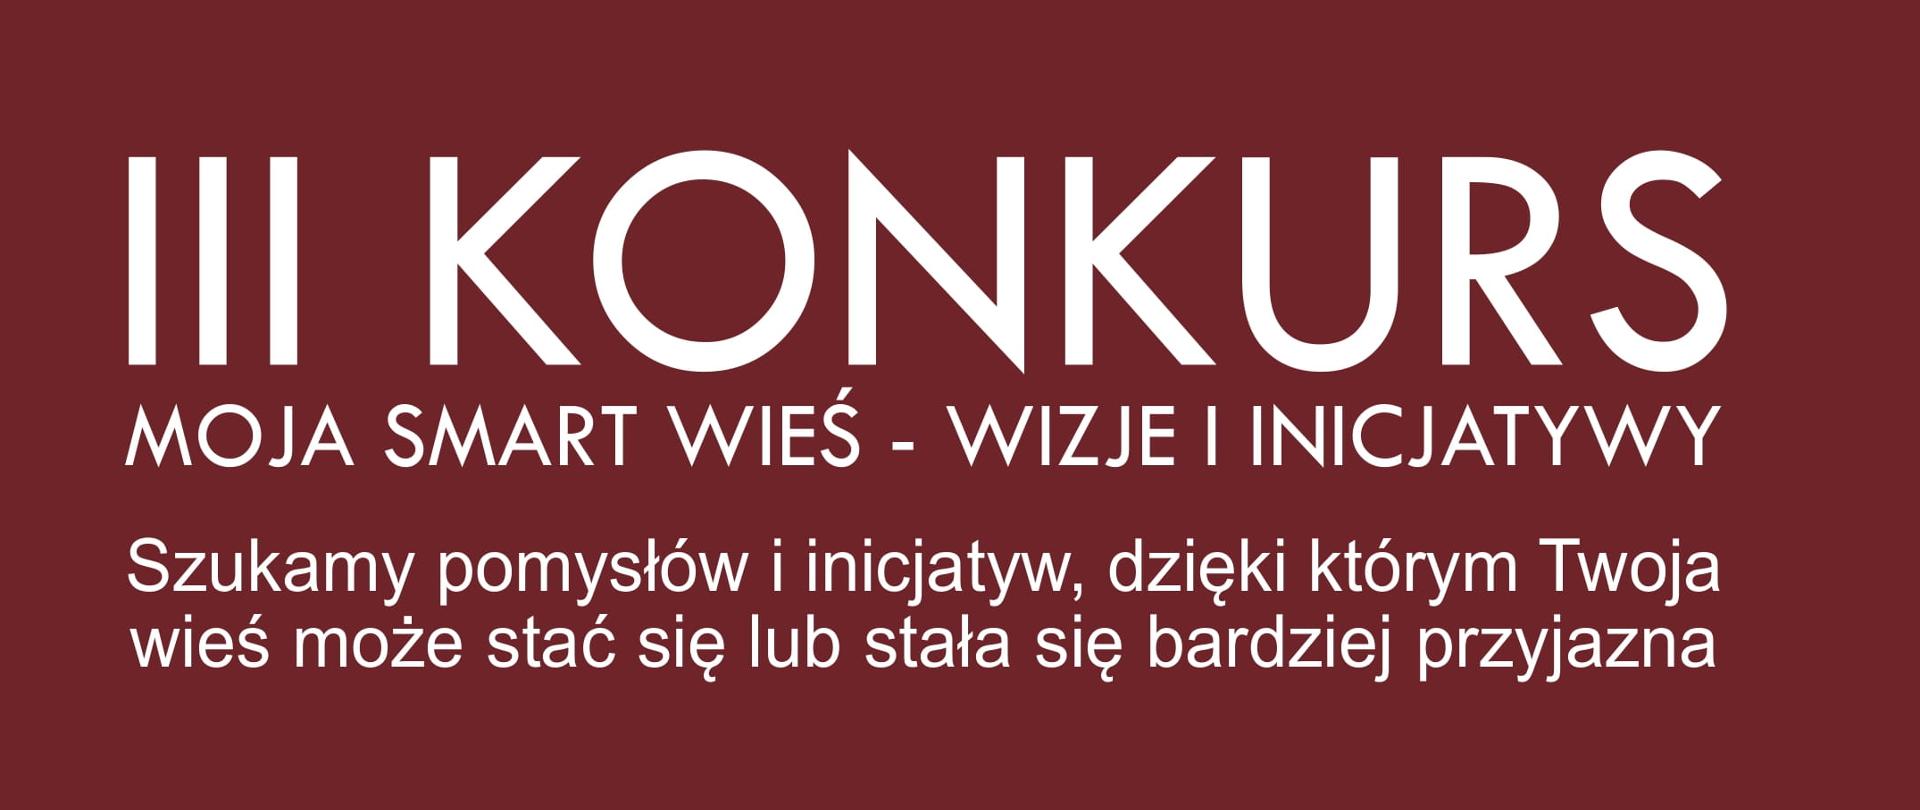 Instytut Rozwoju Wsi i Rolnictwa Polskiej Akademii Nauk (IRWiR PAN) zaprasza do udziału w III Konkursie "Moja smart wieś - Wizje i Inicjatywy". 